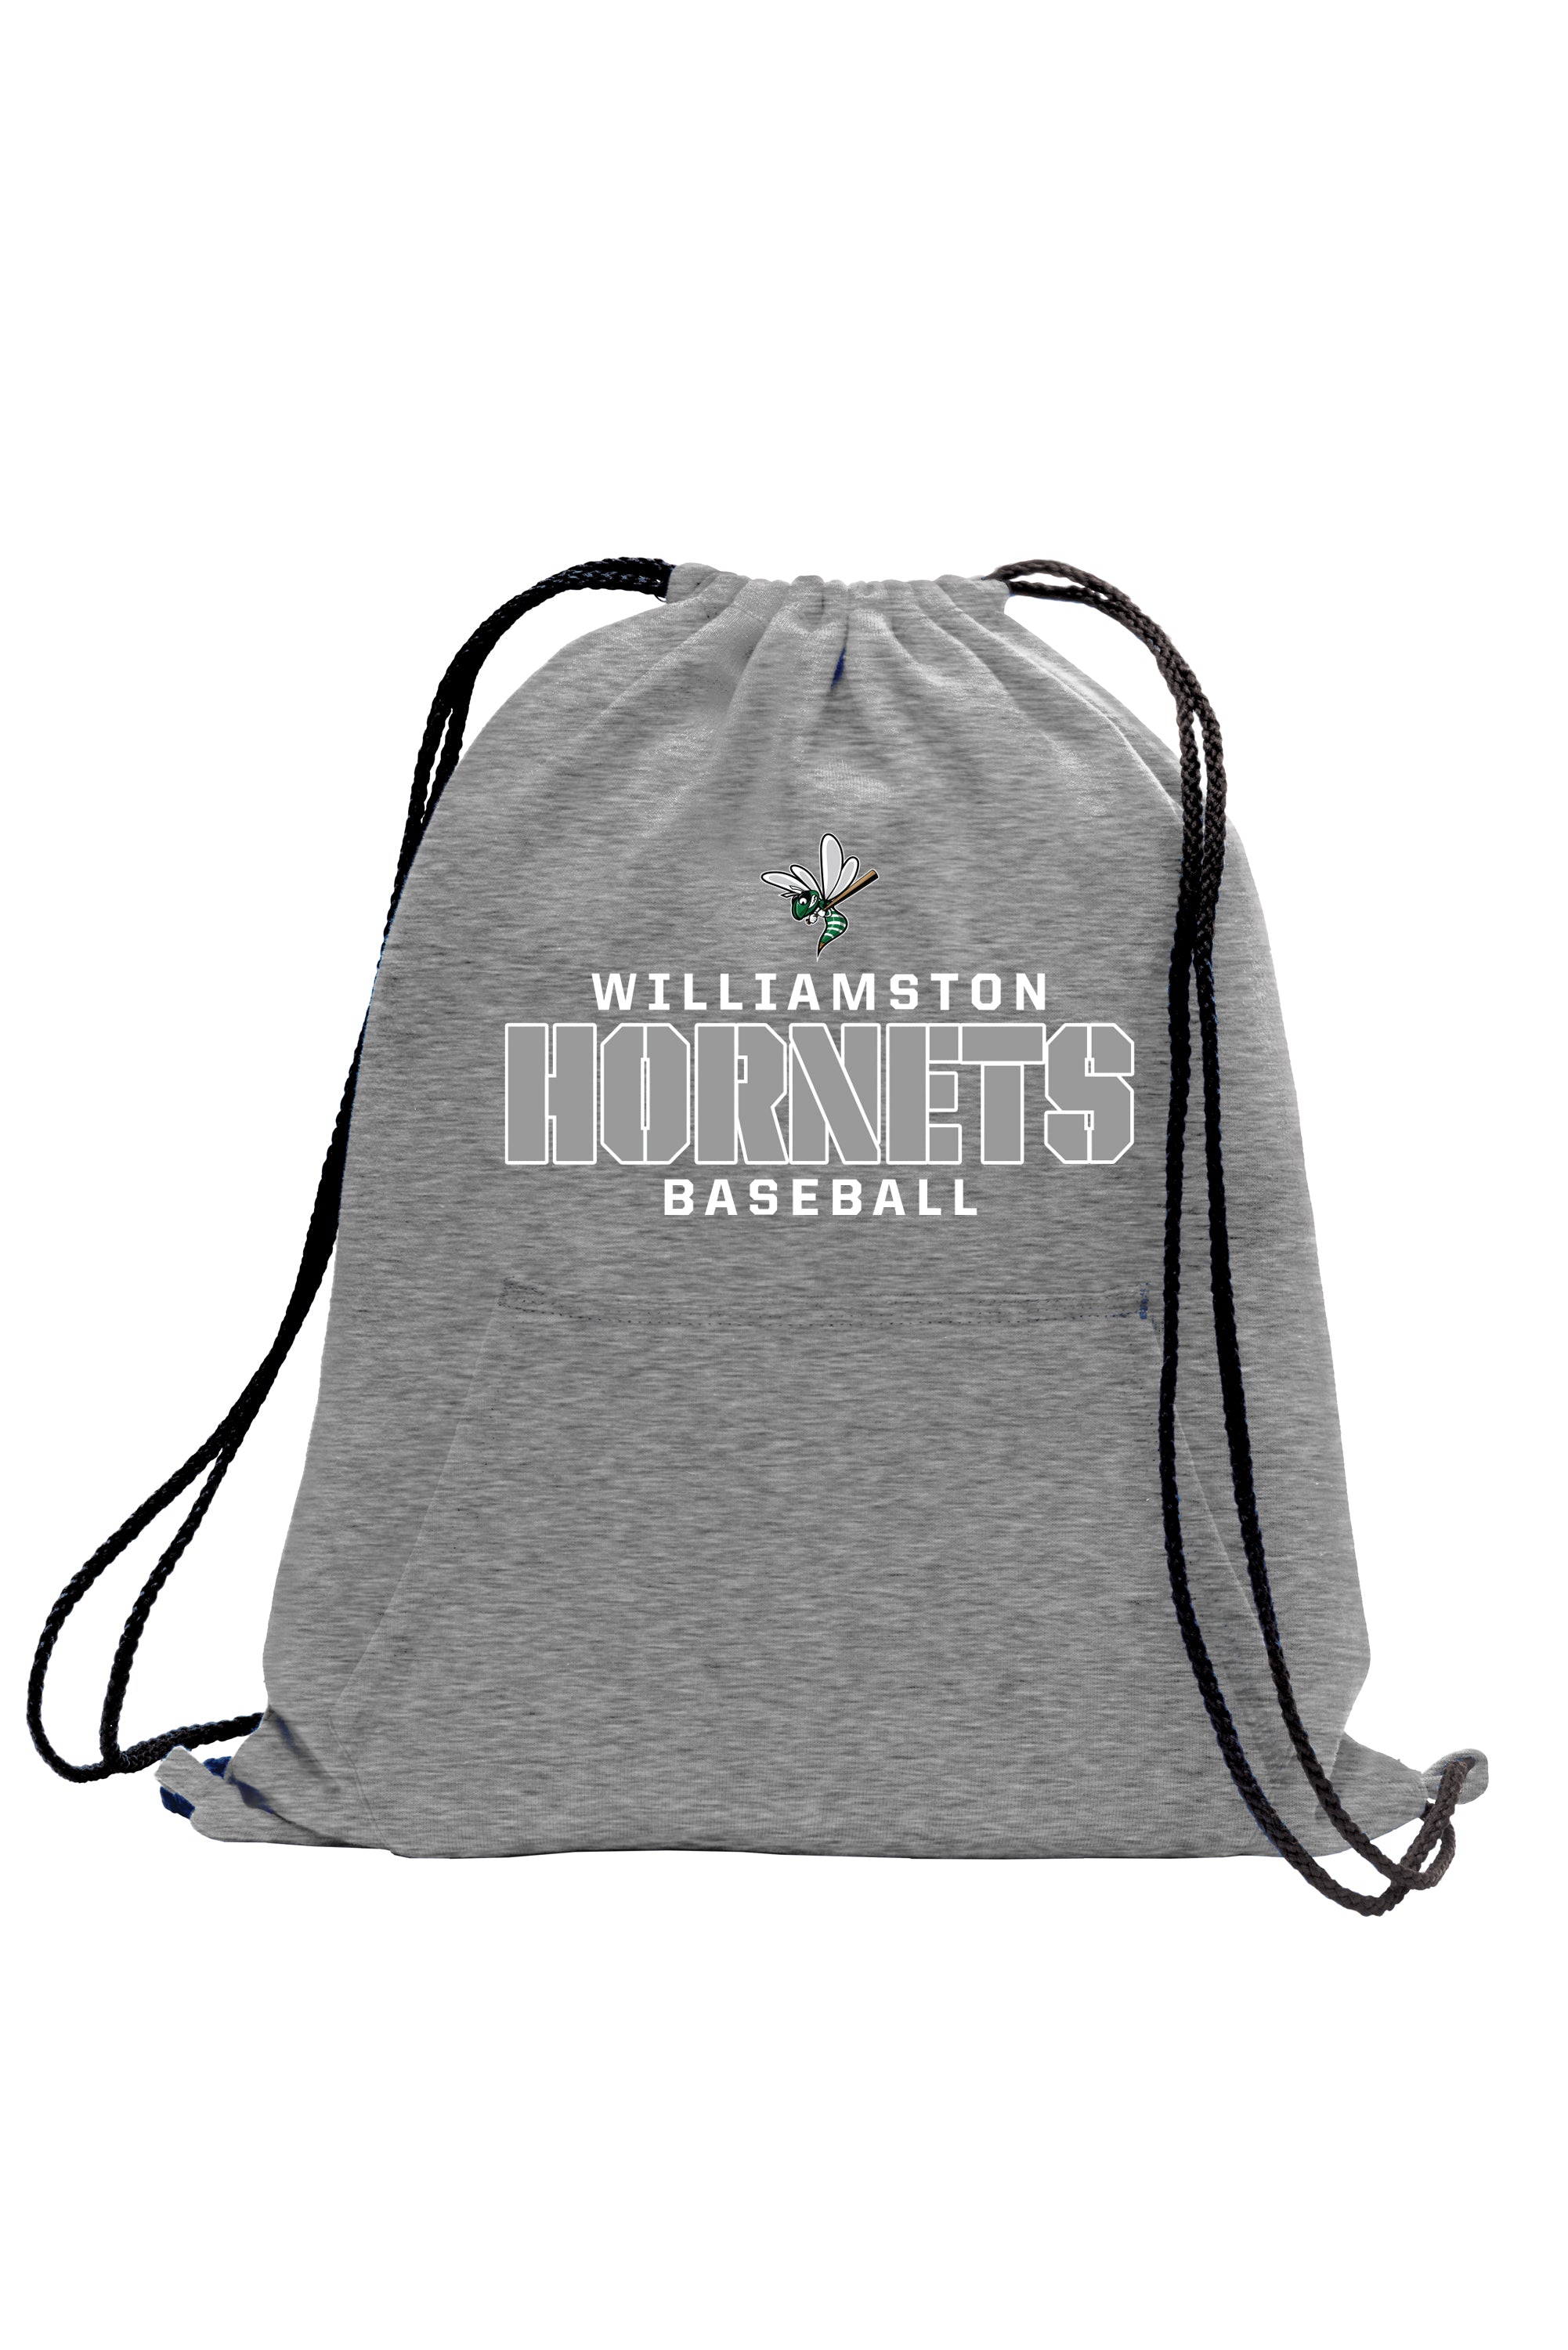 Williamston Baseball - Drawstring Bag